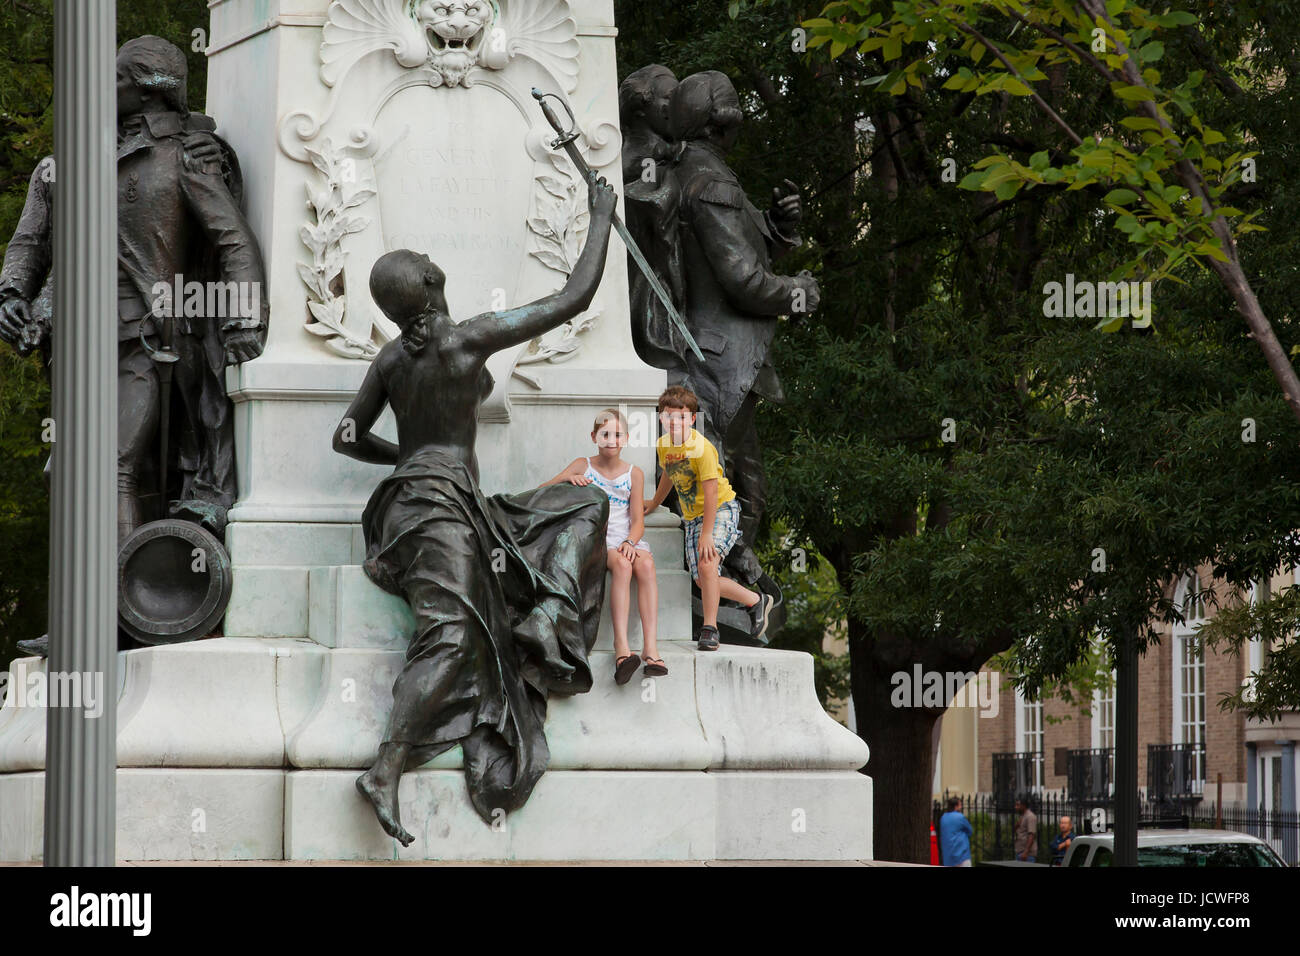 Kinder klettern auf öffentlichen Statue zu fotografieren - Washington, DC USA Stockfoto